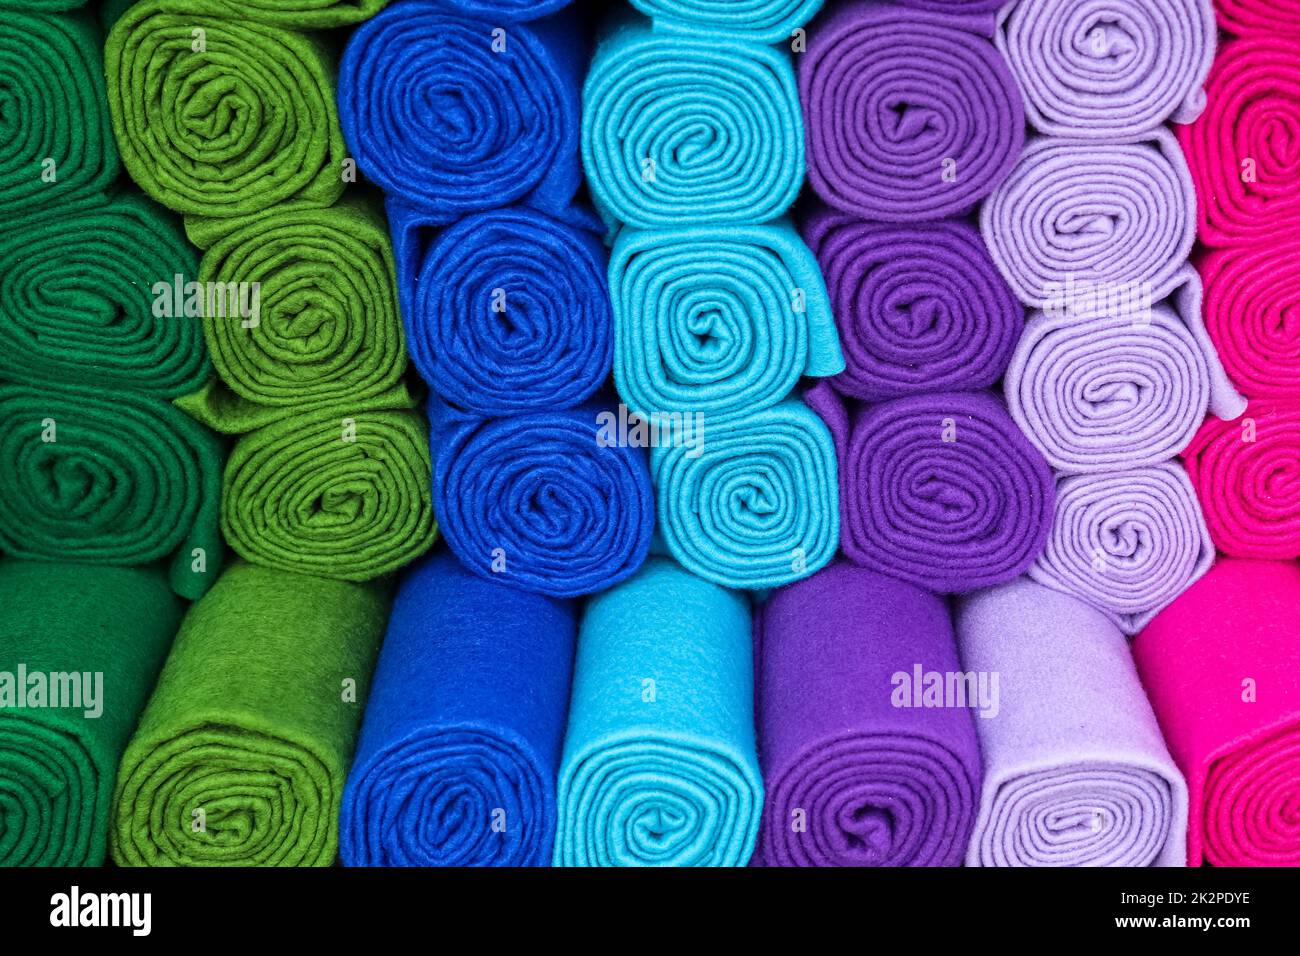 Campioni di stoffe e tessuti in diversi colori trovati in un mercato di tessuti. Foto Stock